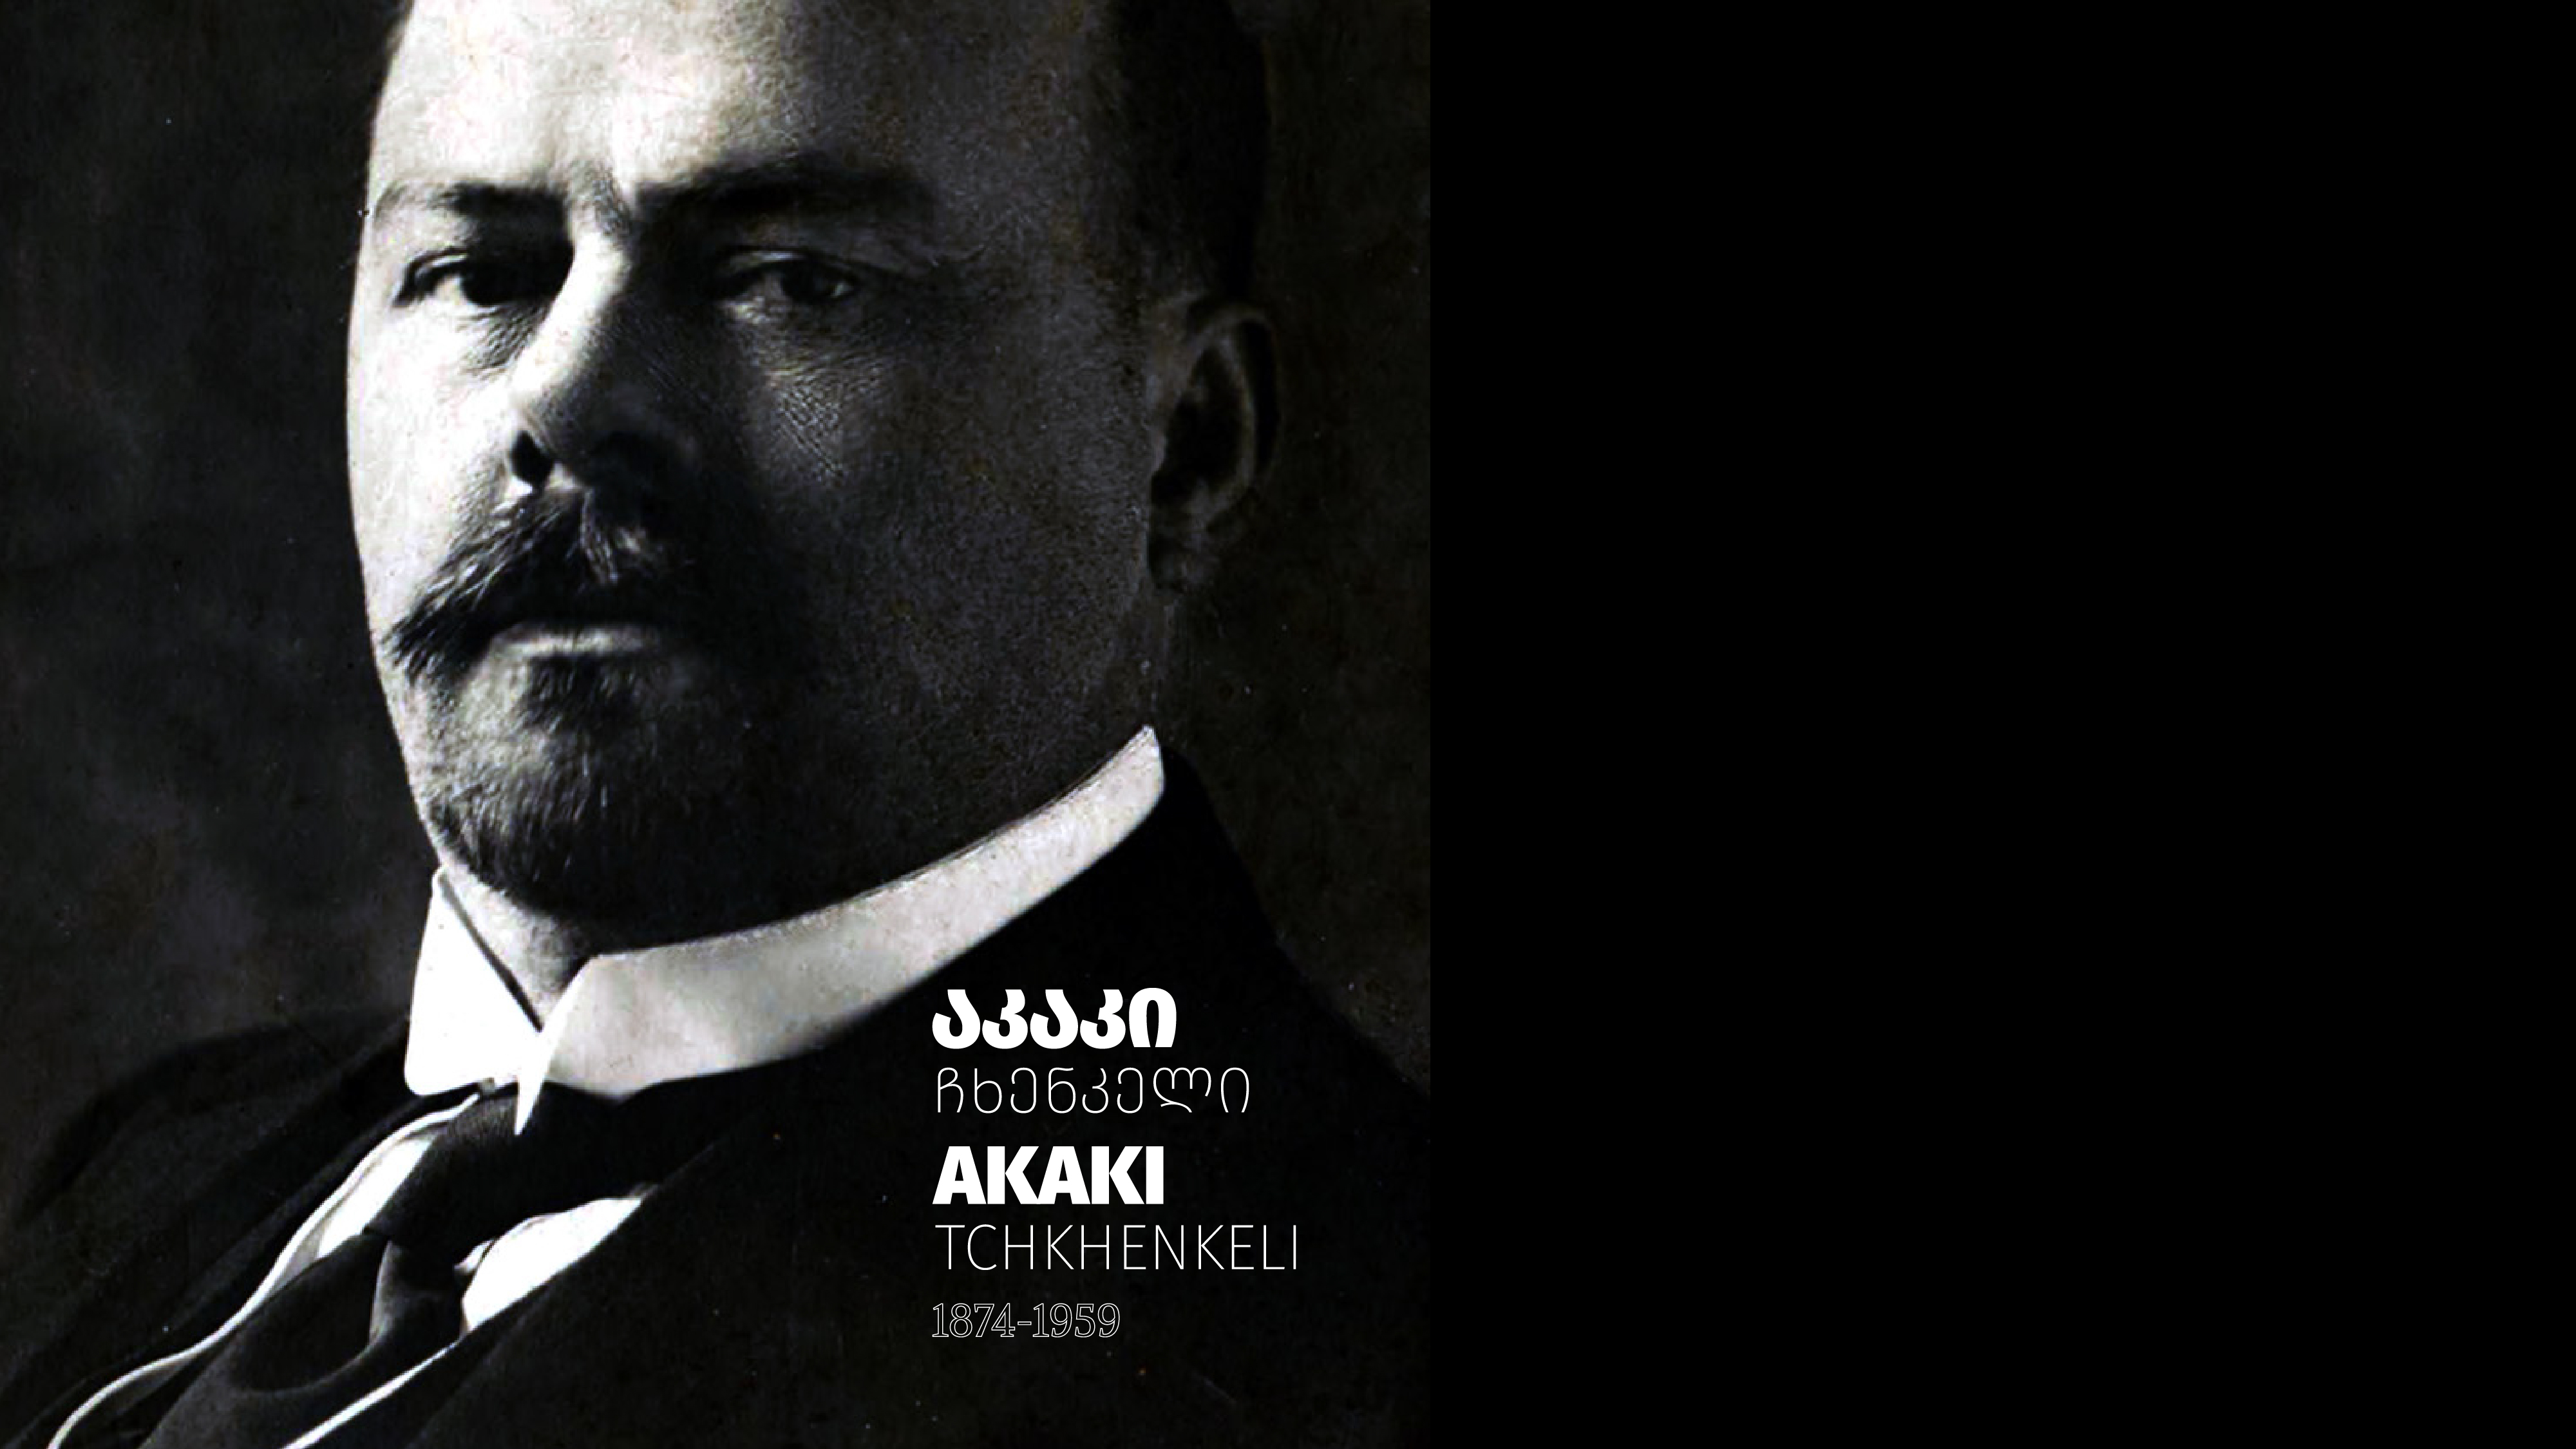 Memorial Album – Akaki Tchkhenkeli (1874-1959)